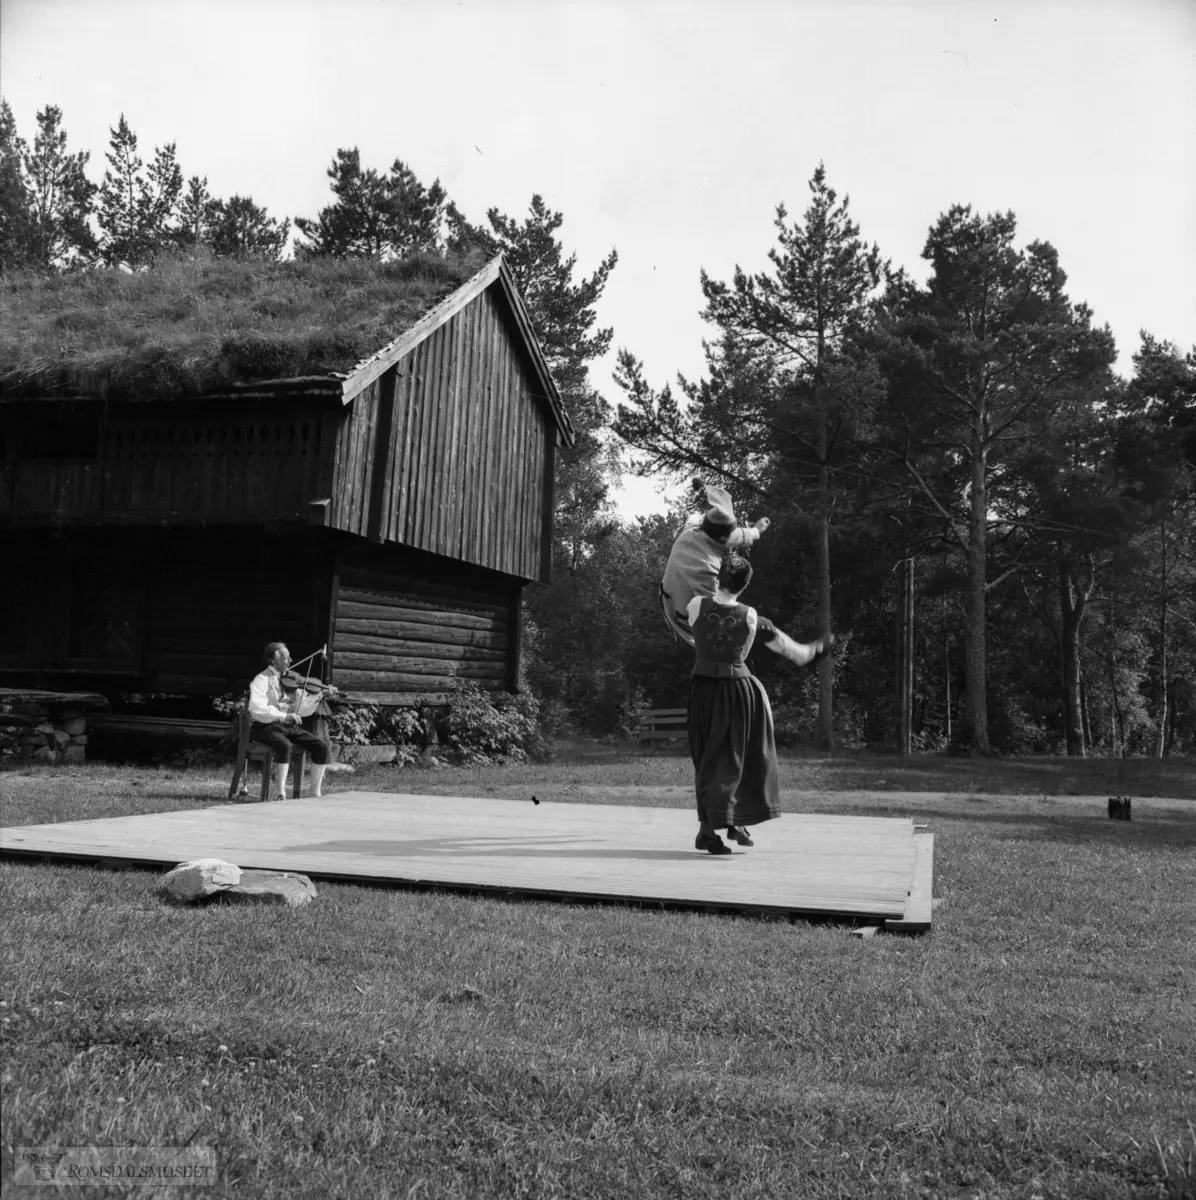 Innspilling av filmen "Romsdalsspringaren" på Eidetunet på Romsdalsmuseet i 1974. Filmen var laget av Egil Bakka. Danserne var fra Bondeungdomslaget i Molde. Spelemennene og spelekvinnen var også fra Bondeungdomslaget og Romsdal Spelemannslag.